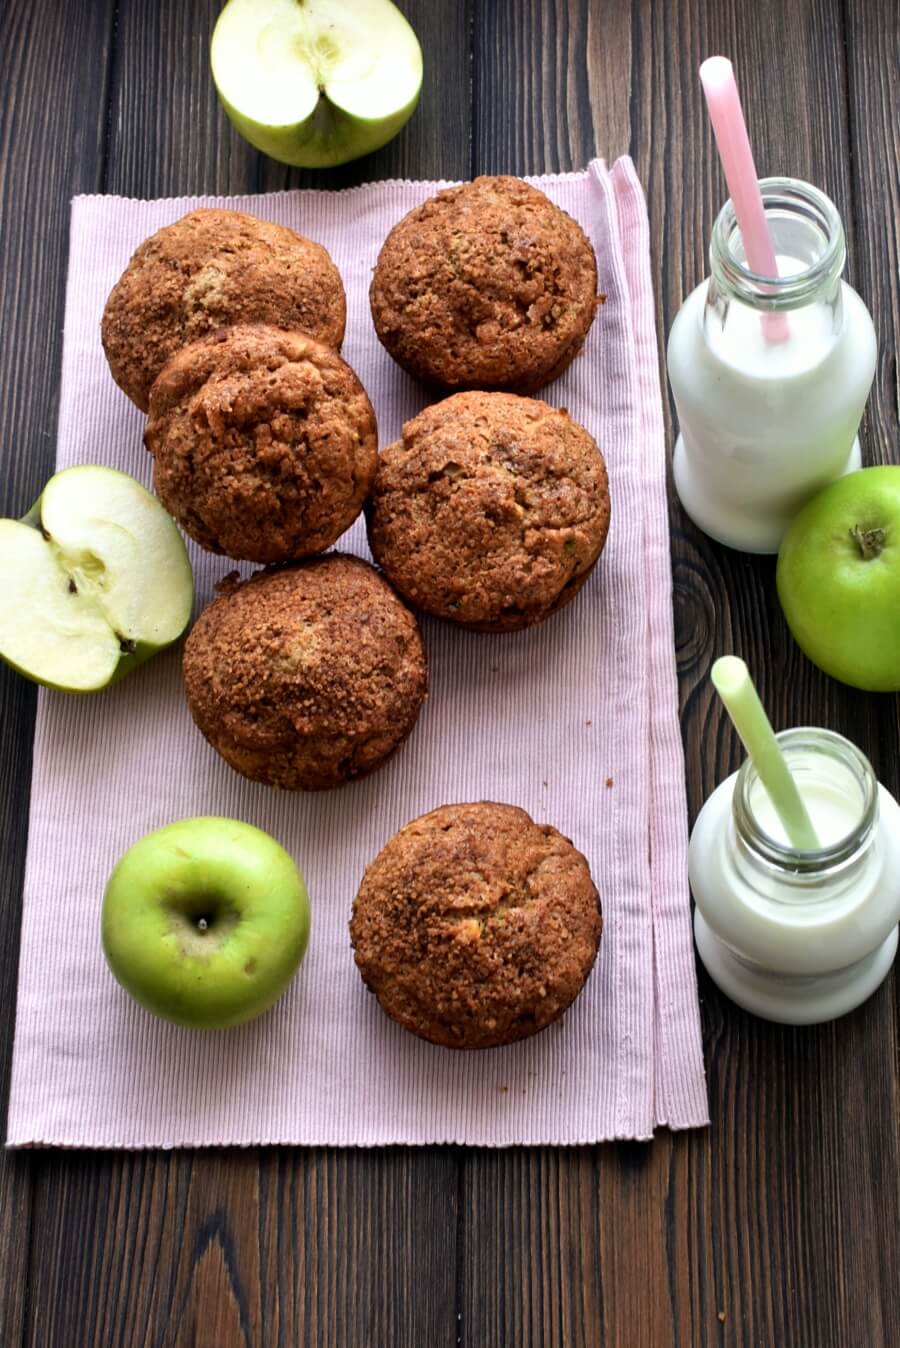 Apple Zucchini Muffins Recipe - Cook.me Recipes